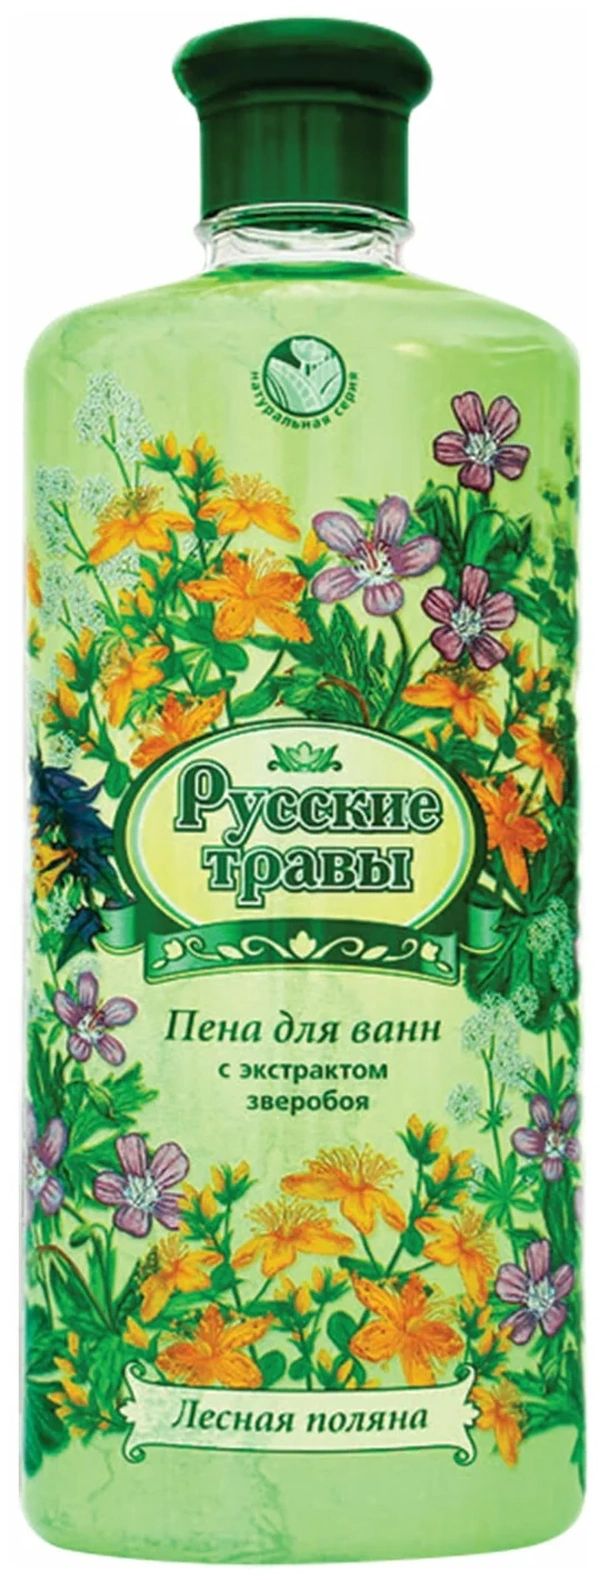 Пена для ванн Русские травы Лесная поляна 500 мл русские травы пена для ванн лесная поляна 500 0